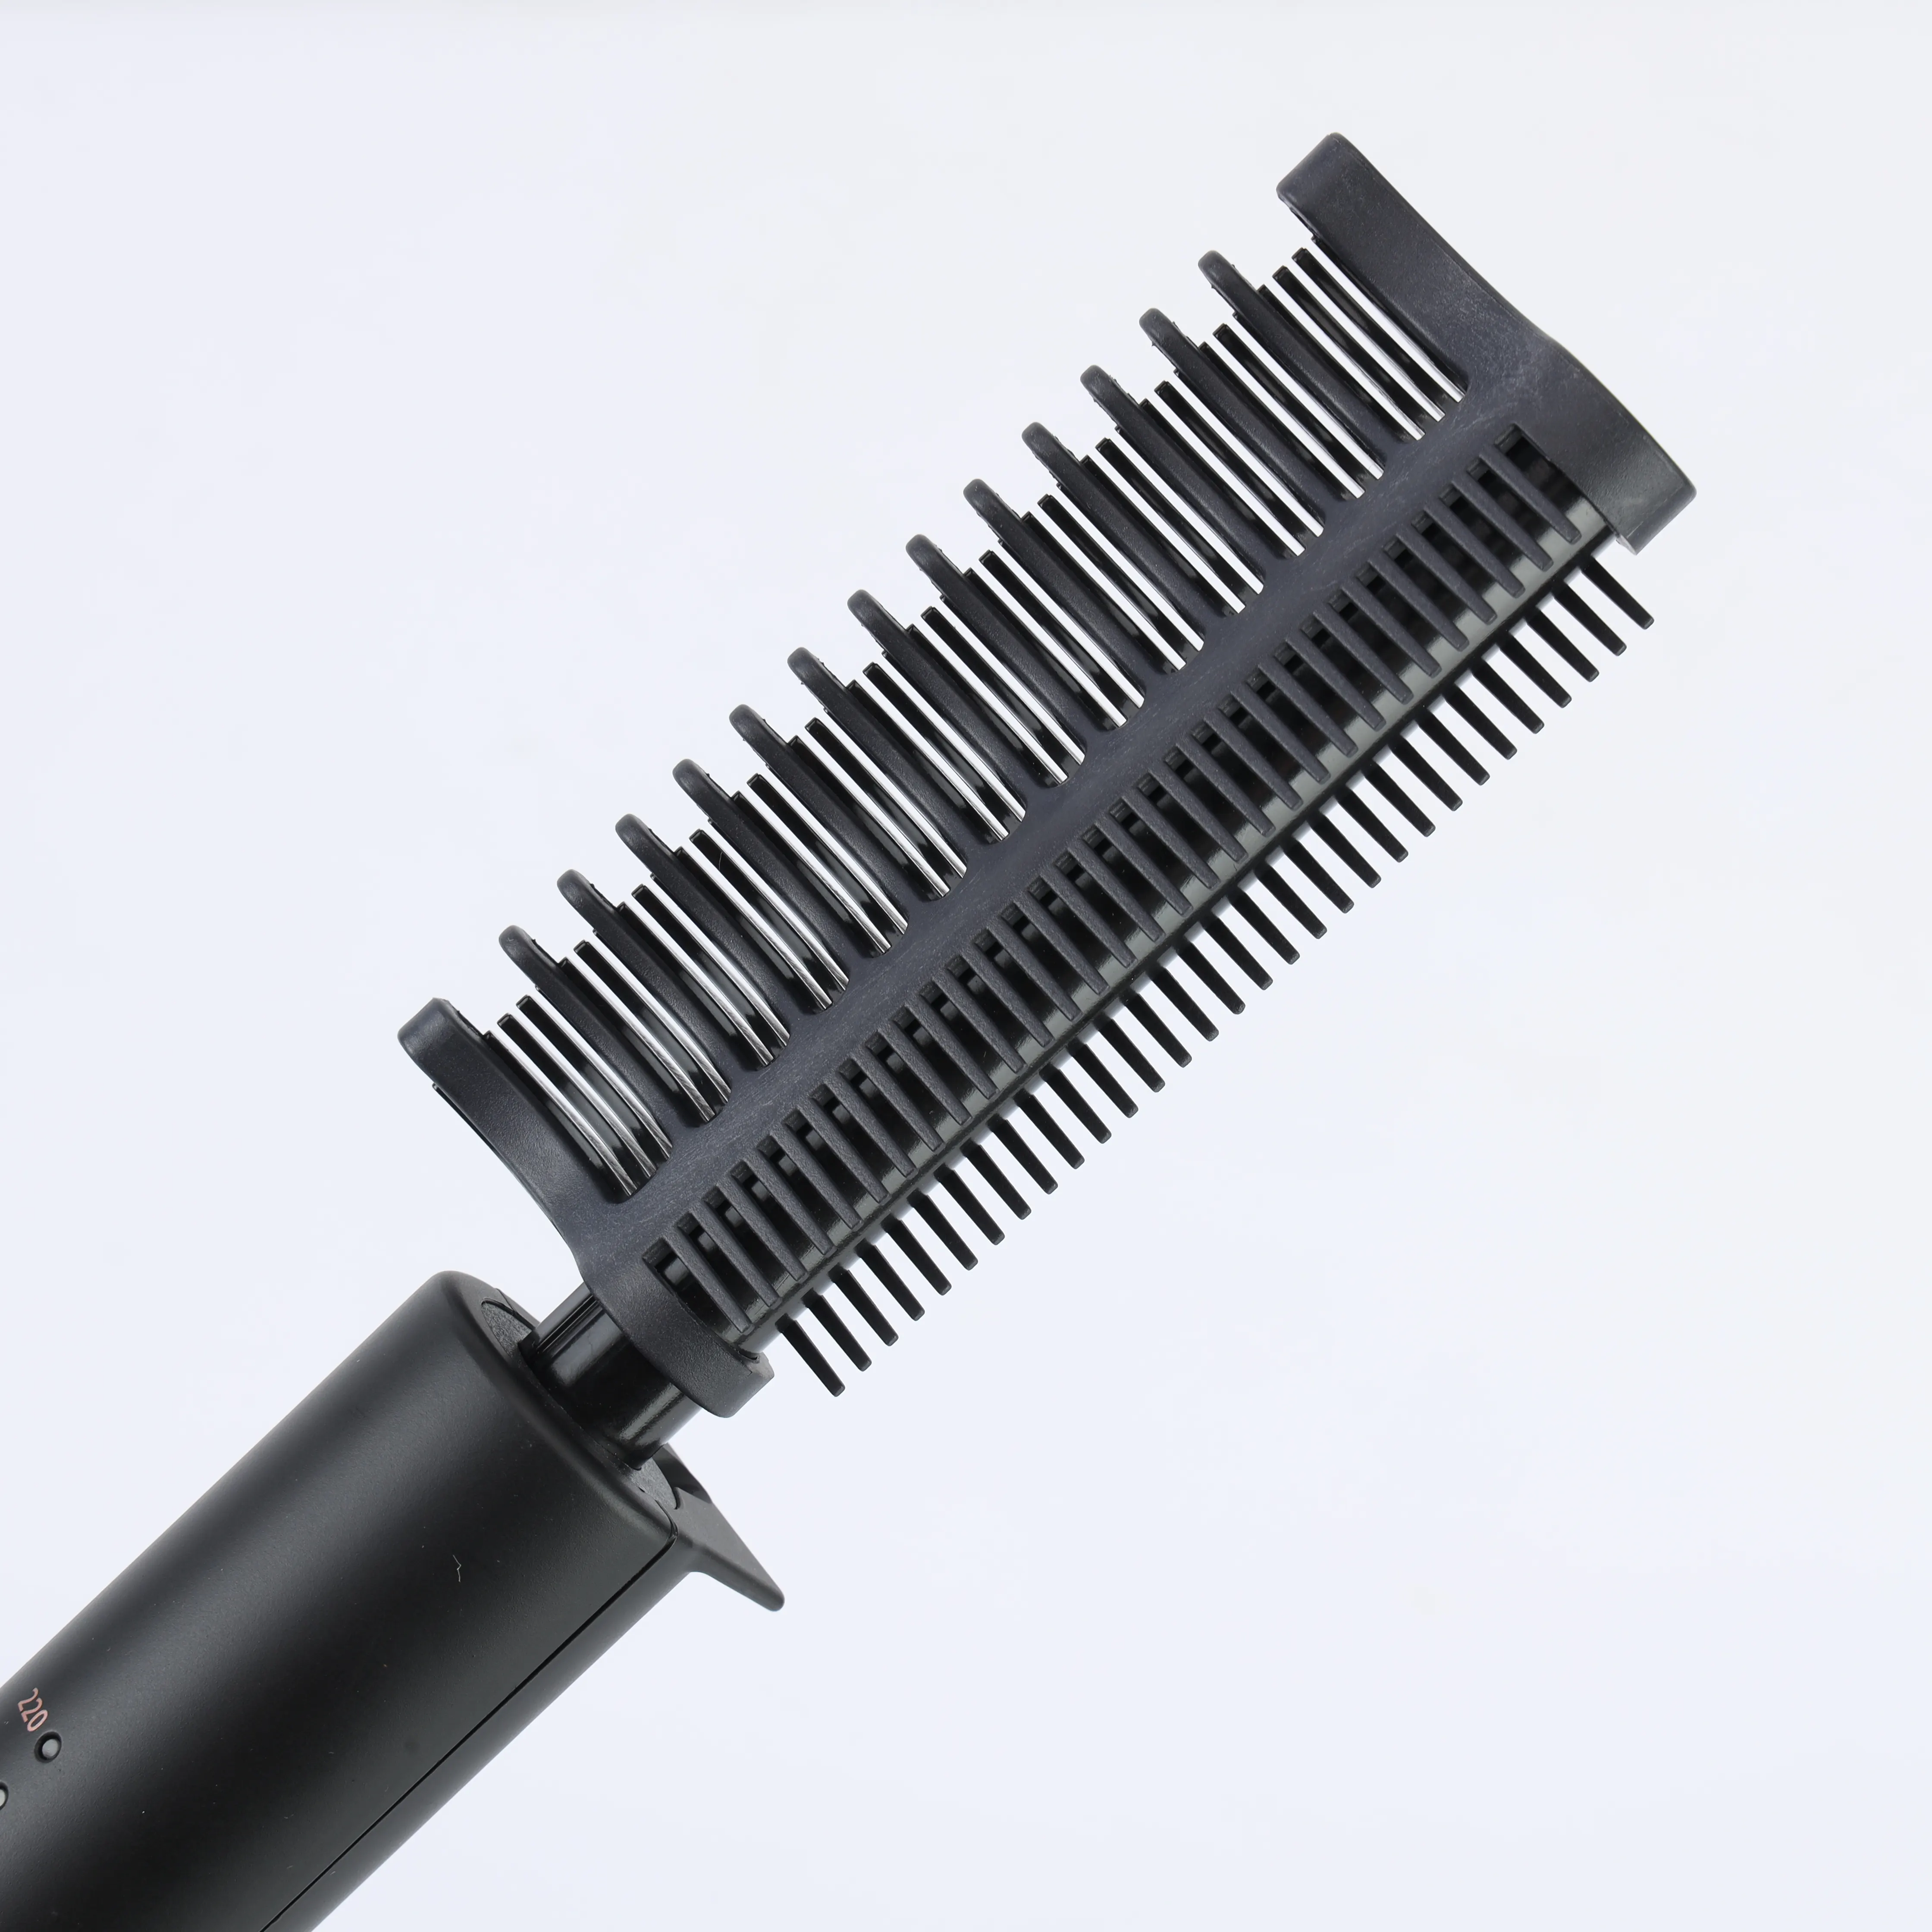 Alat salon rambut profesional 20 juta kelas Ion negatif perawatan rambut rambut pada penggunaan penuh untuk wanita